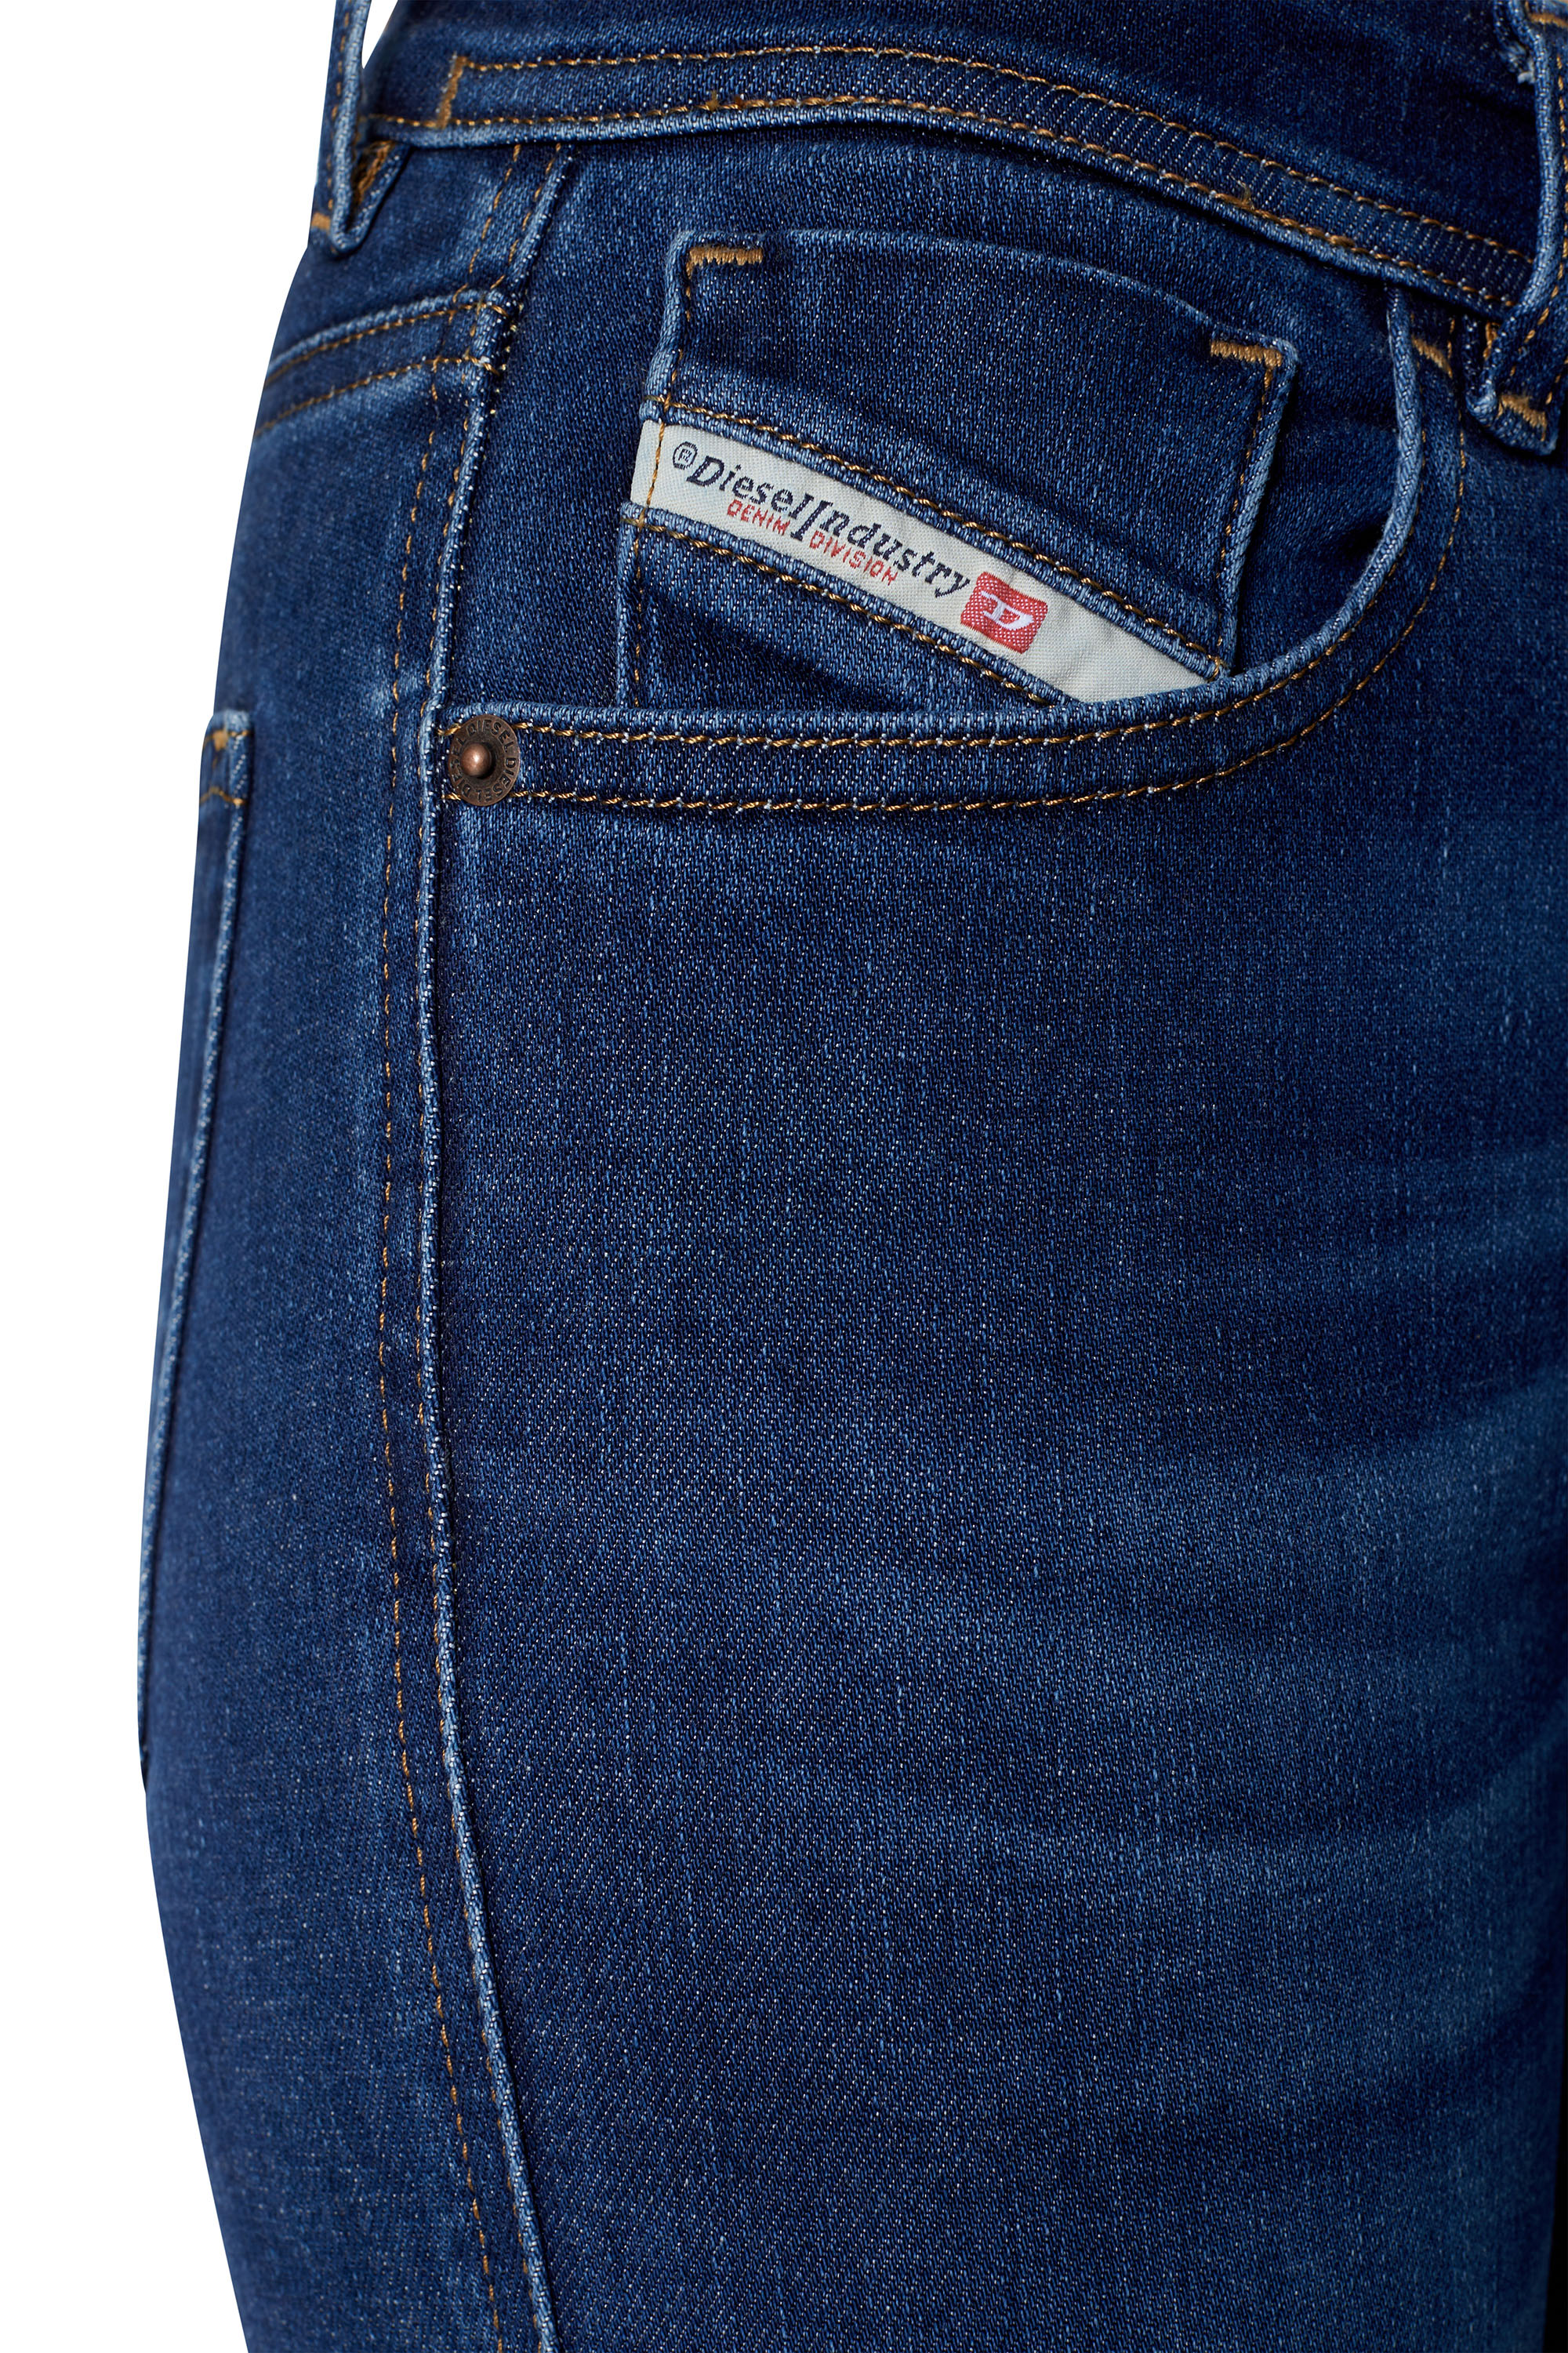 Diesel - Super skinny Jeans 2017 Slandy 09C19,  - Image 3